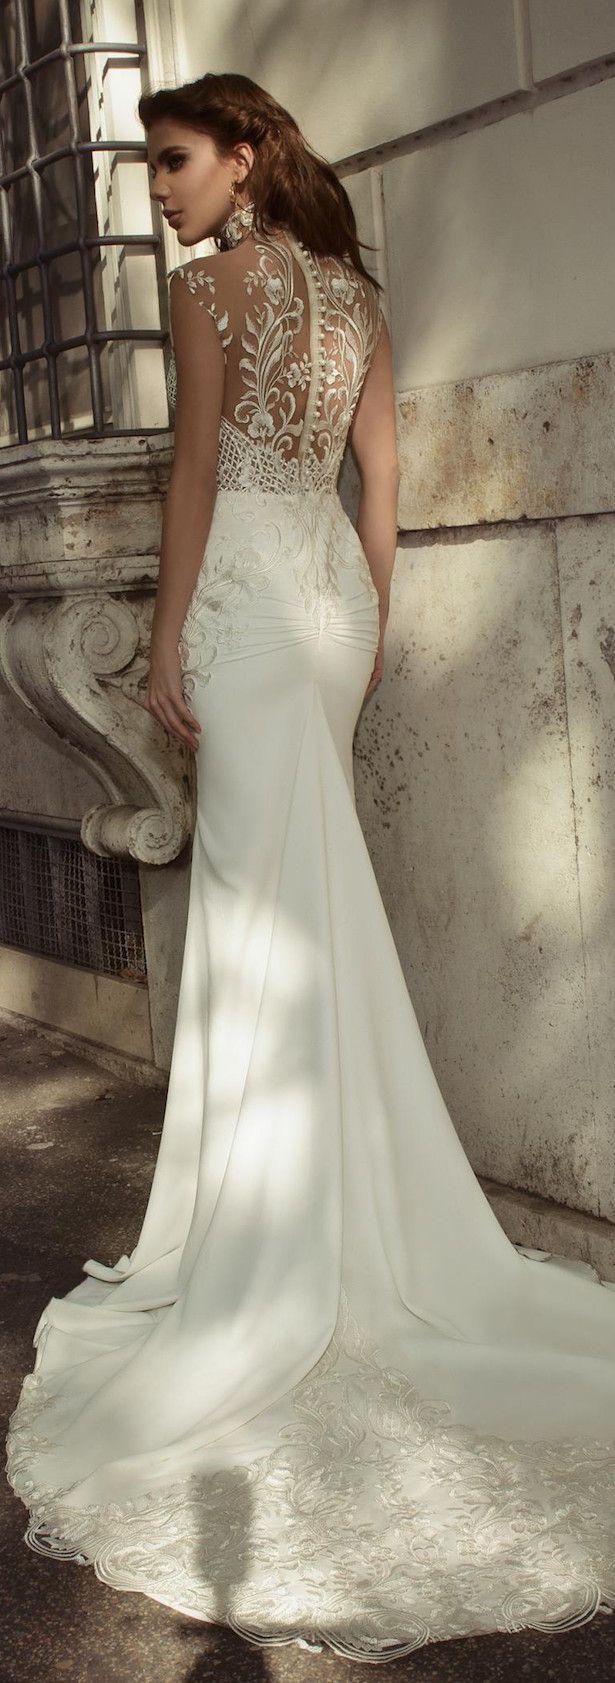 زفاف - Julie Vino Bridal Spring 2017 - Roma Collection Wedding Dress